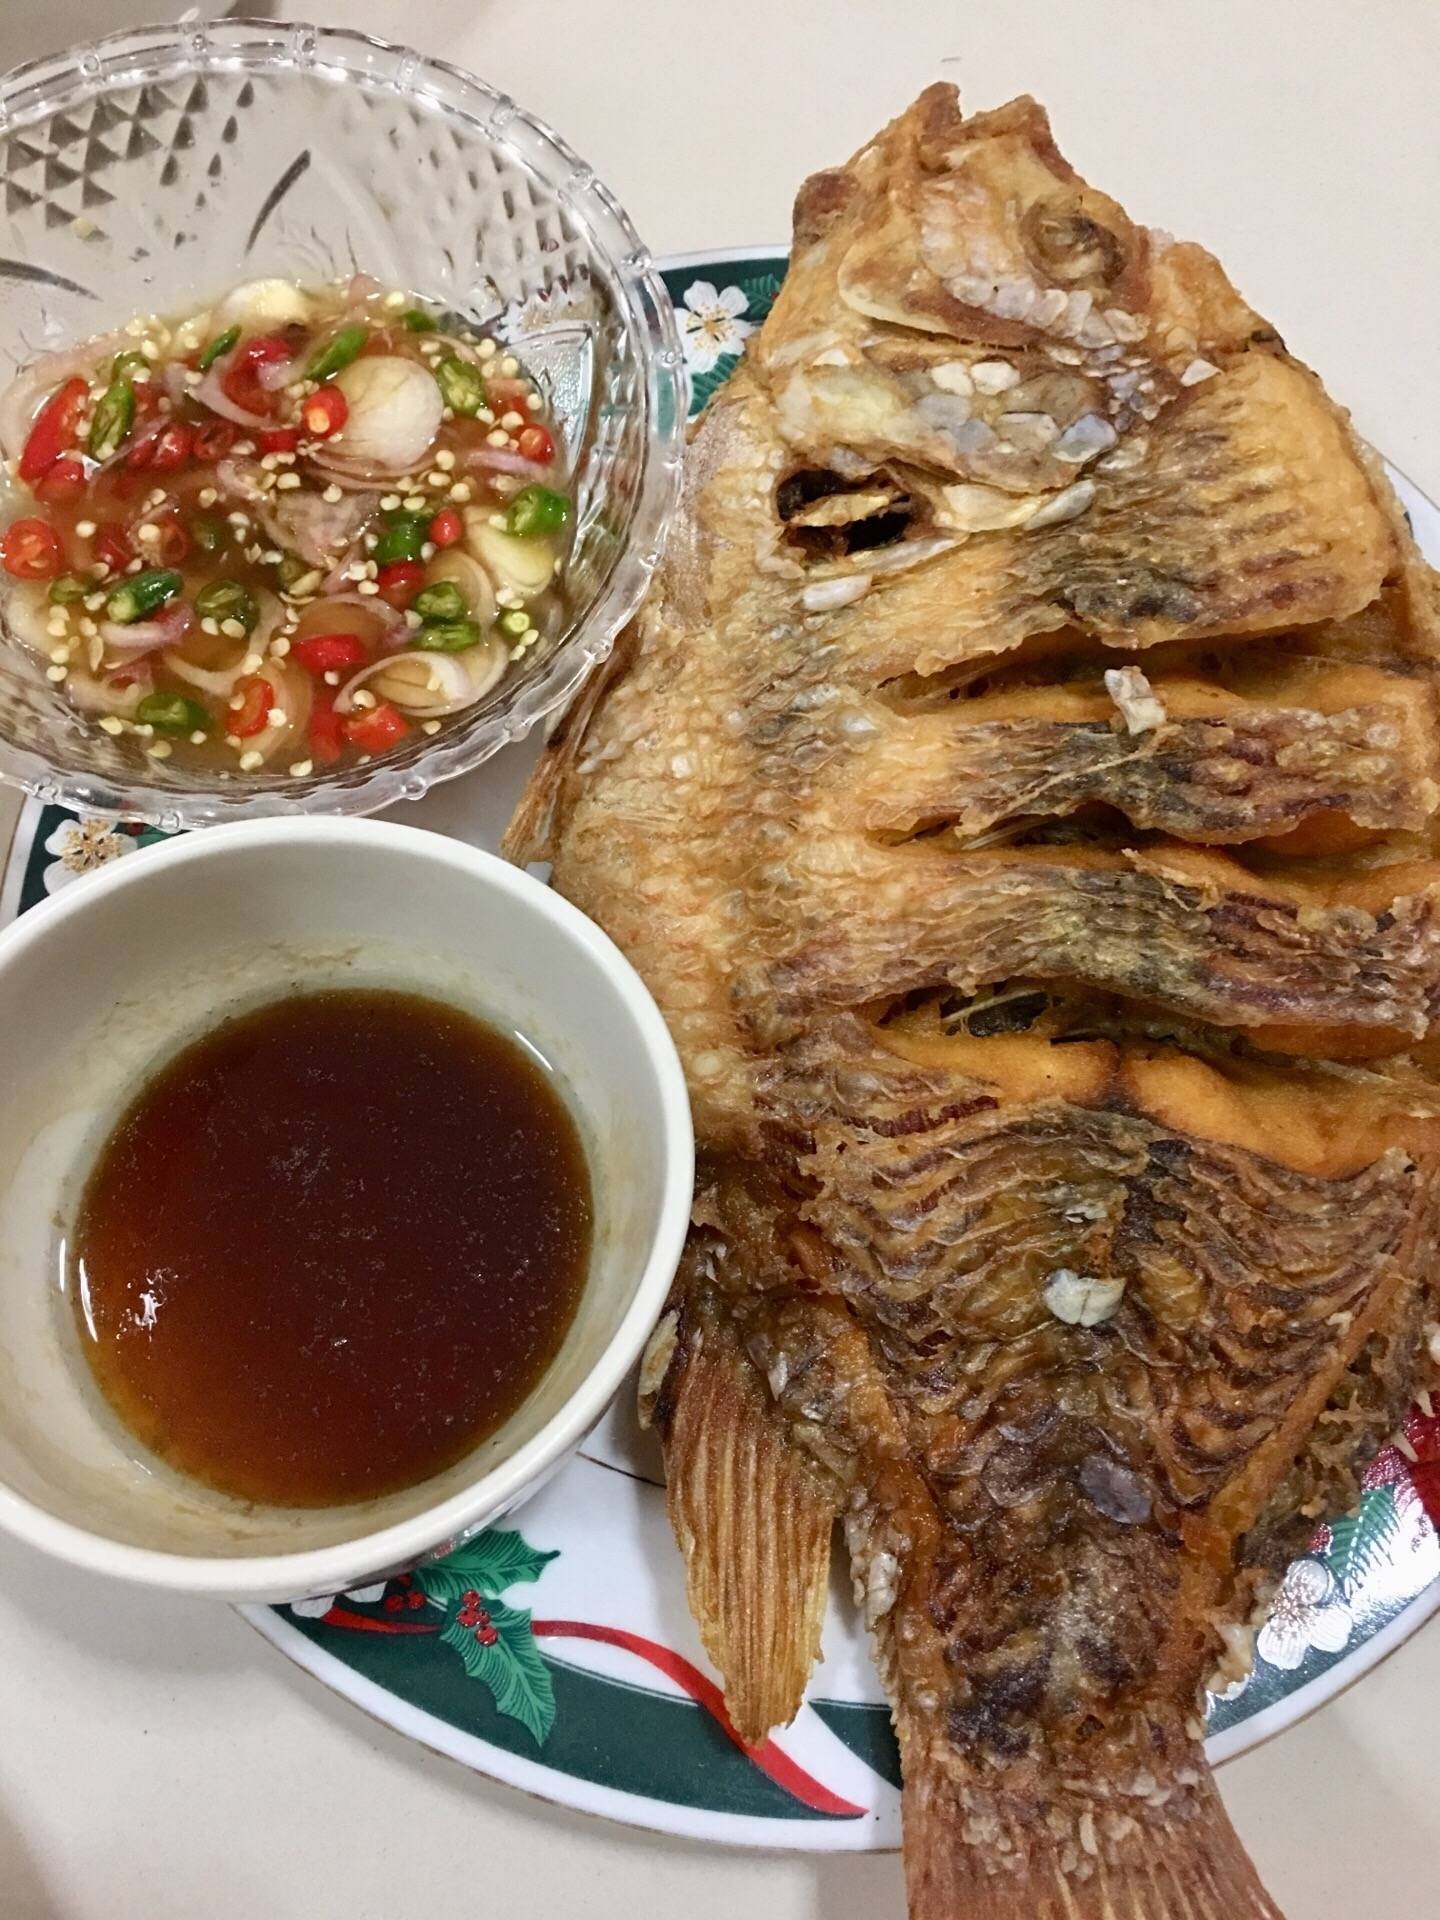 “ปลาทับทิมทอดซอสน้ำปลาราดน้ำยำ”